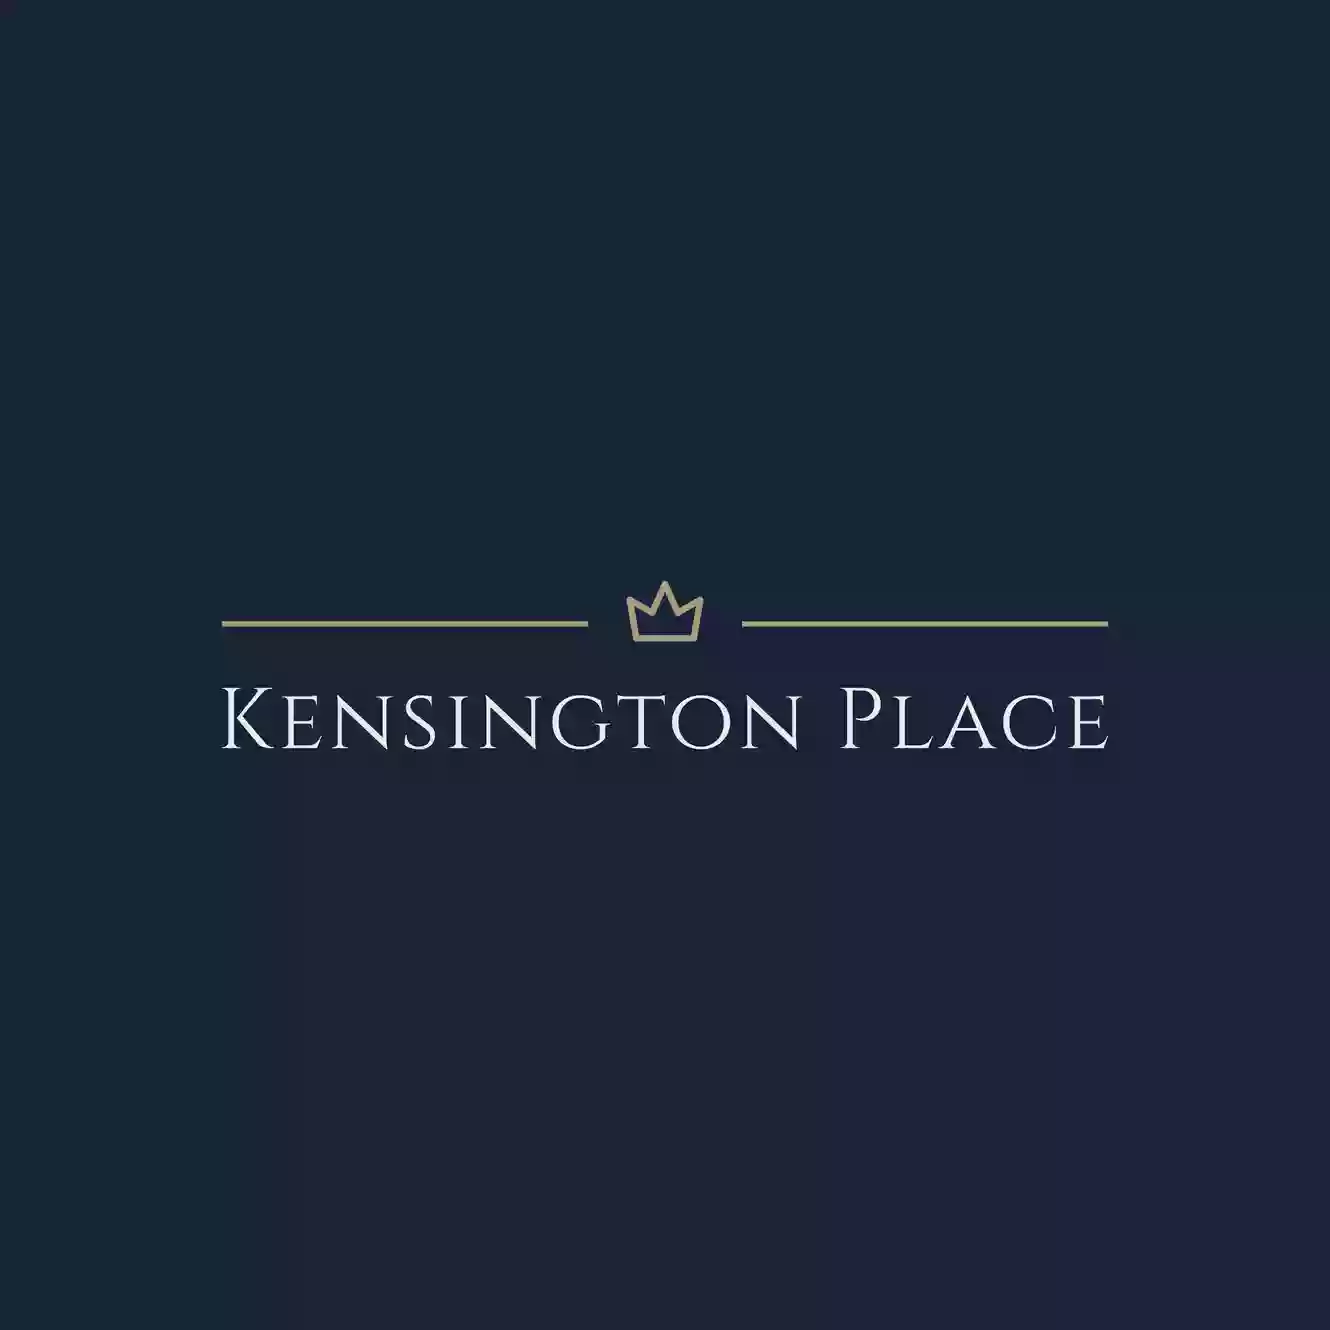 Kensington Place